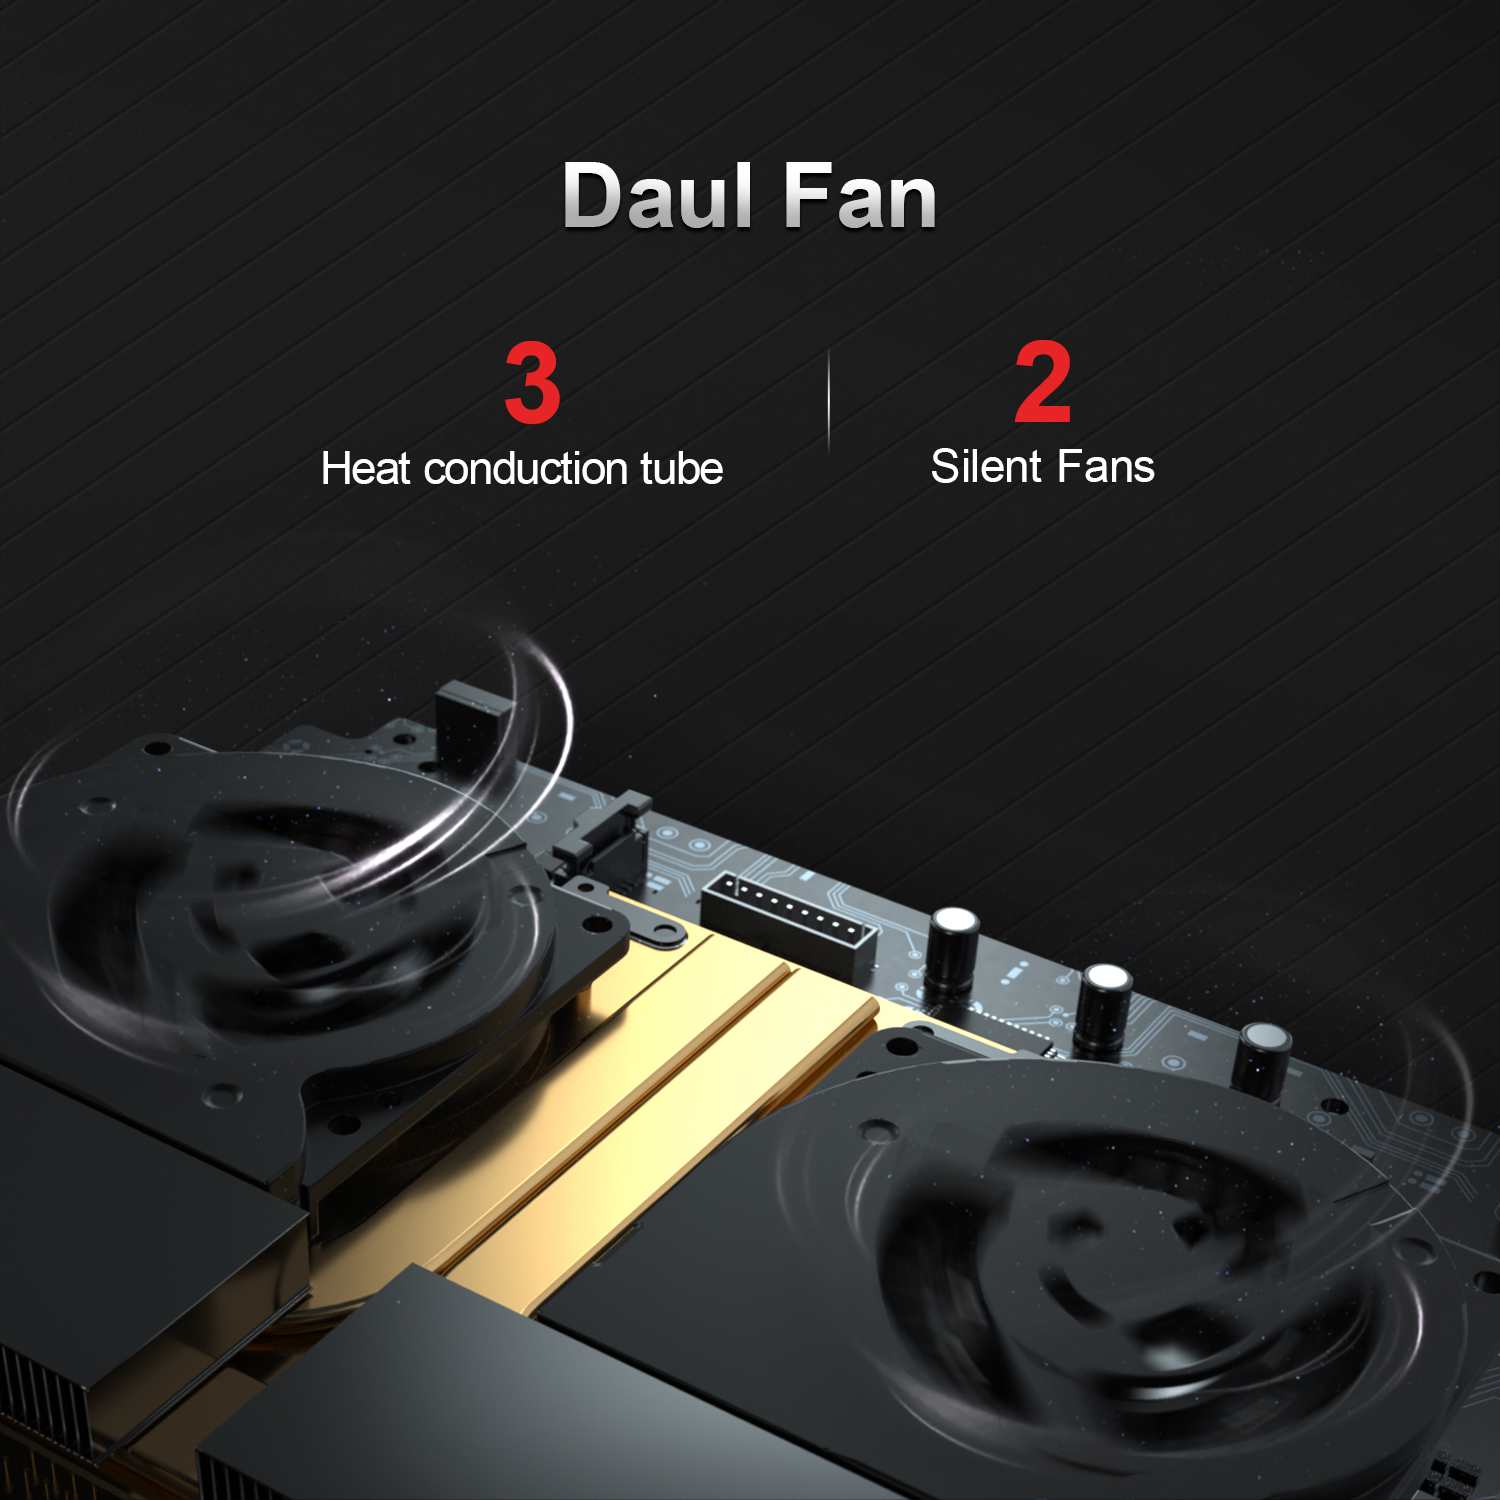 เกี่ยวกับ [เปิดใช้งานล่วงหน้า Win11 Pro]Mini PC มินิพีซี GT-R AMD Ryzen 5 3550H 16GB 512GB SSD WiFi 6 Quad-Core 8เธรดรองรับ 2.4G/5G บลูทูธ WiFi คู่4.0เซนเซอร์พิมพ์ลายนิ้วมือ Dual Fan Cooling De